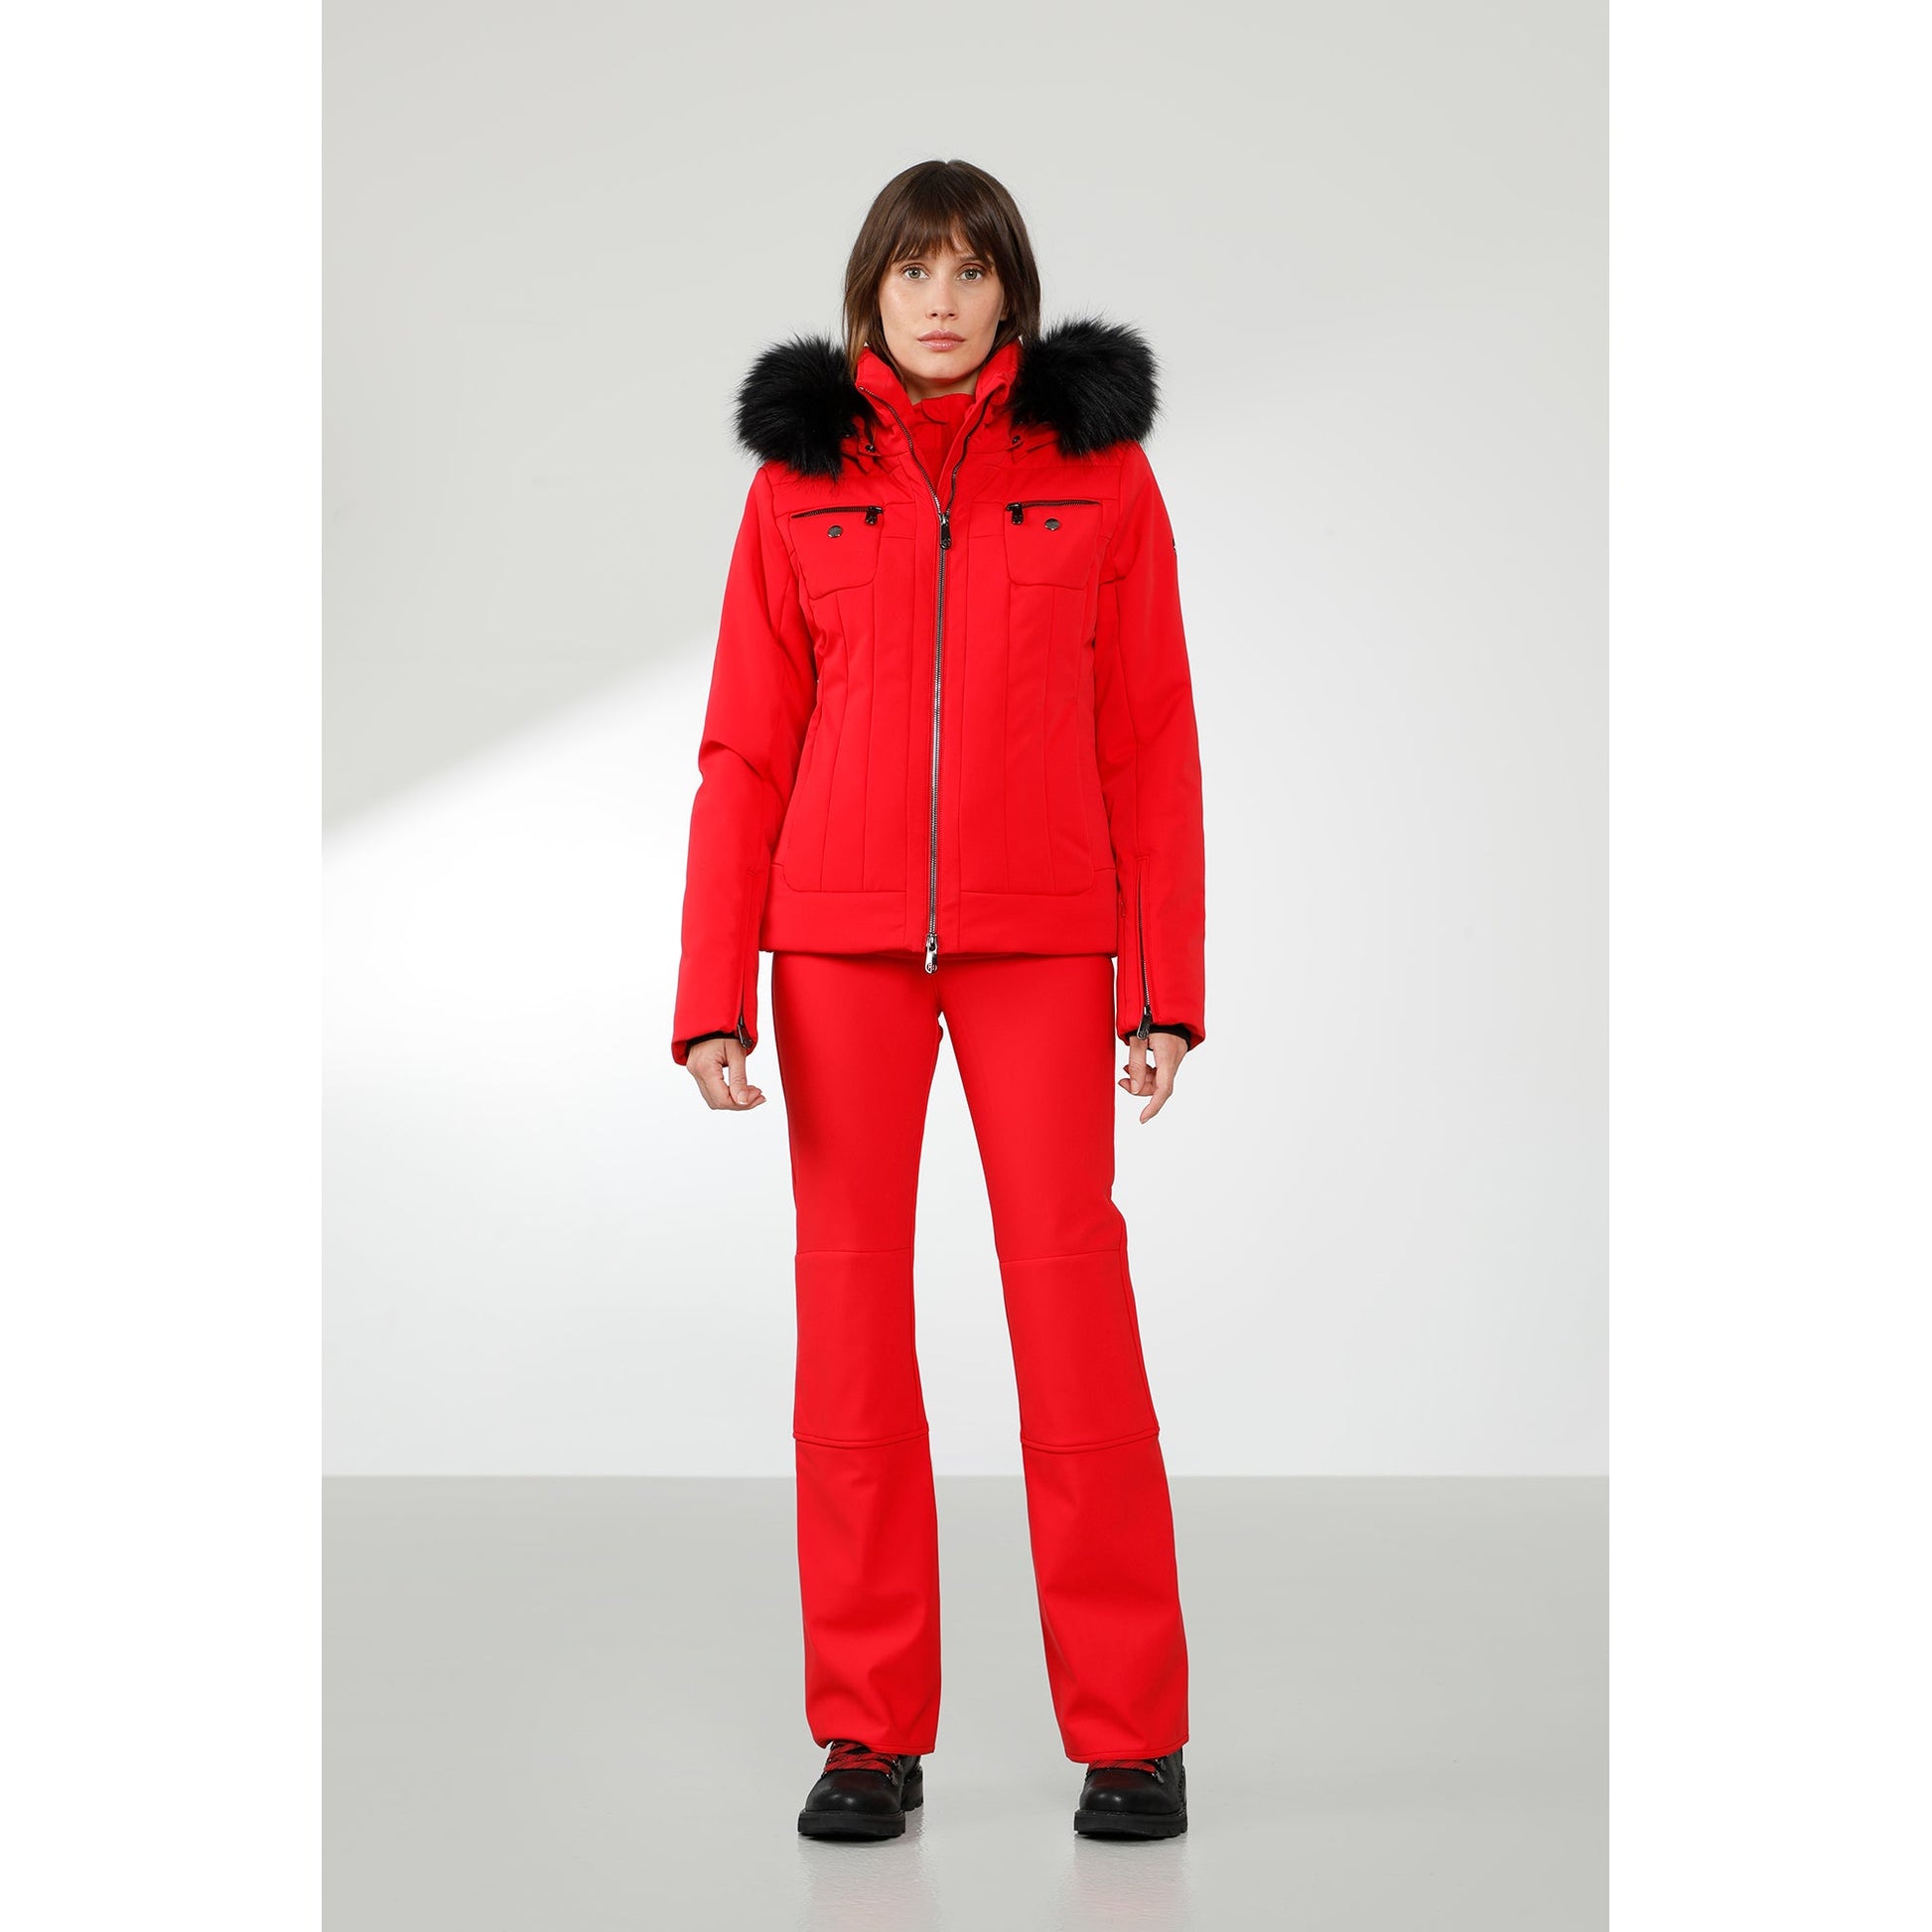 Poivre Blanc Genie Stretch Insulated Ski Jacket with Faux Fur (Girls')